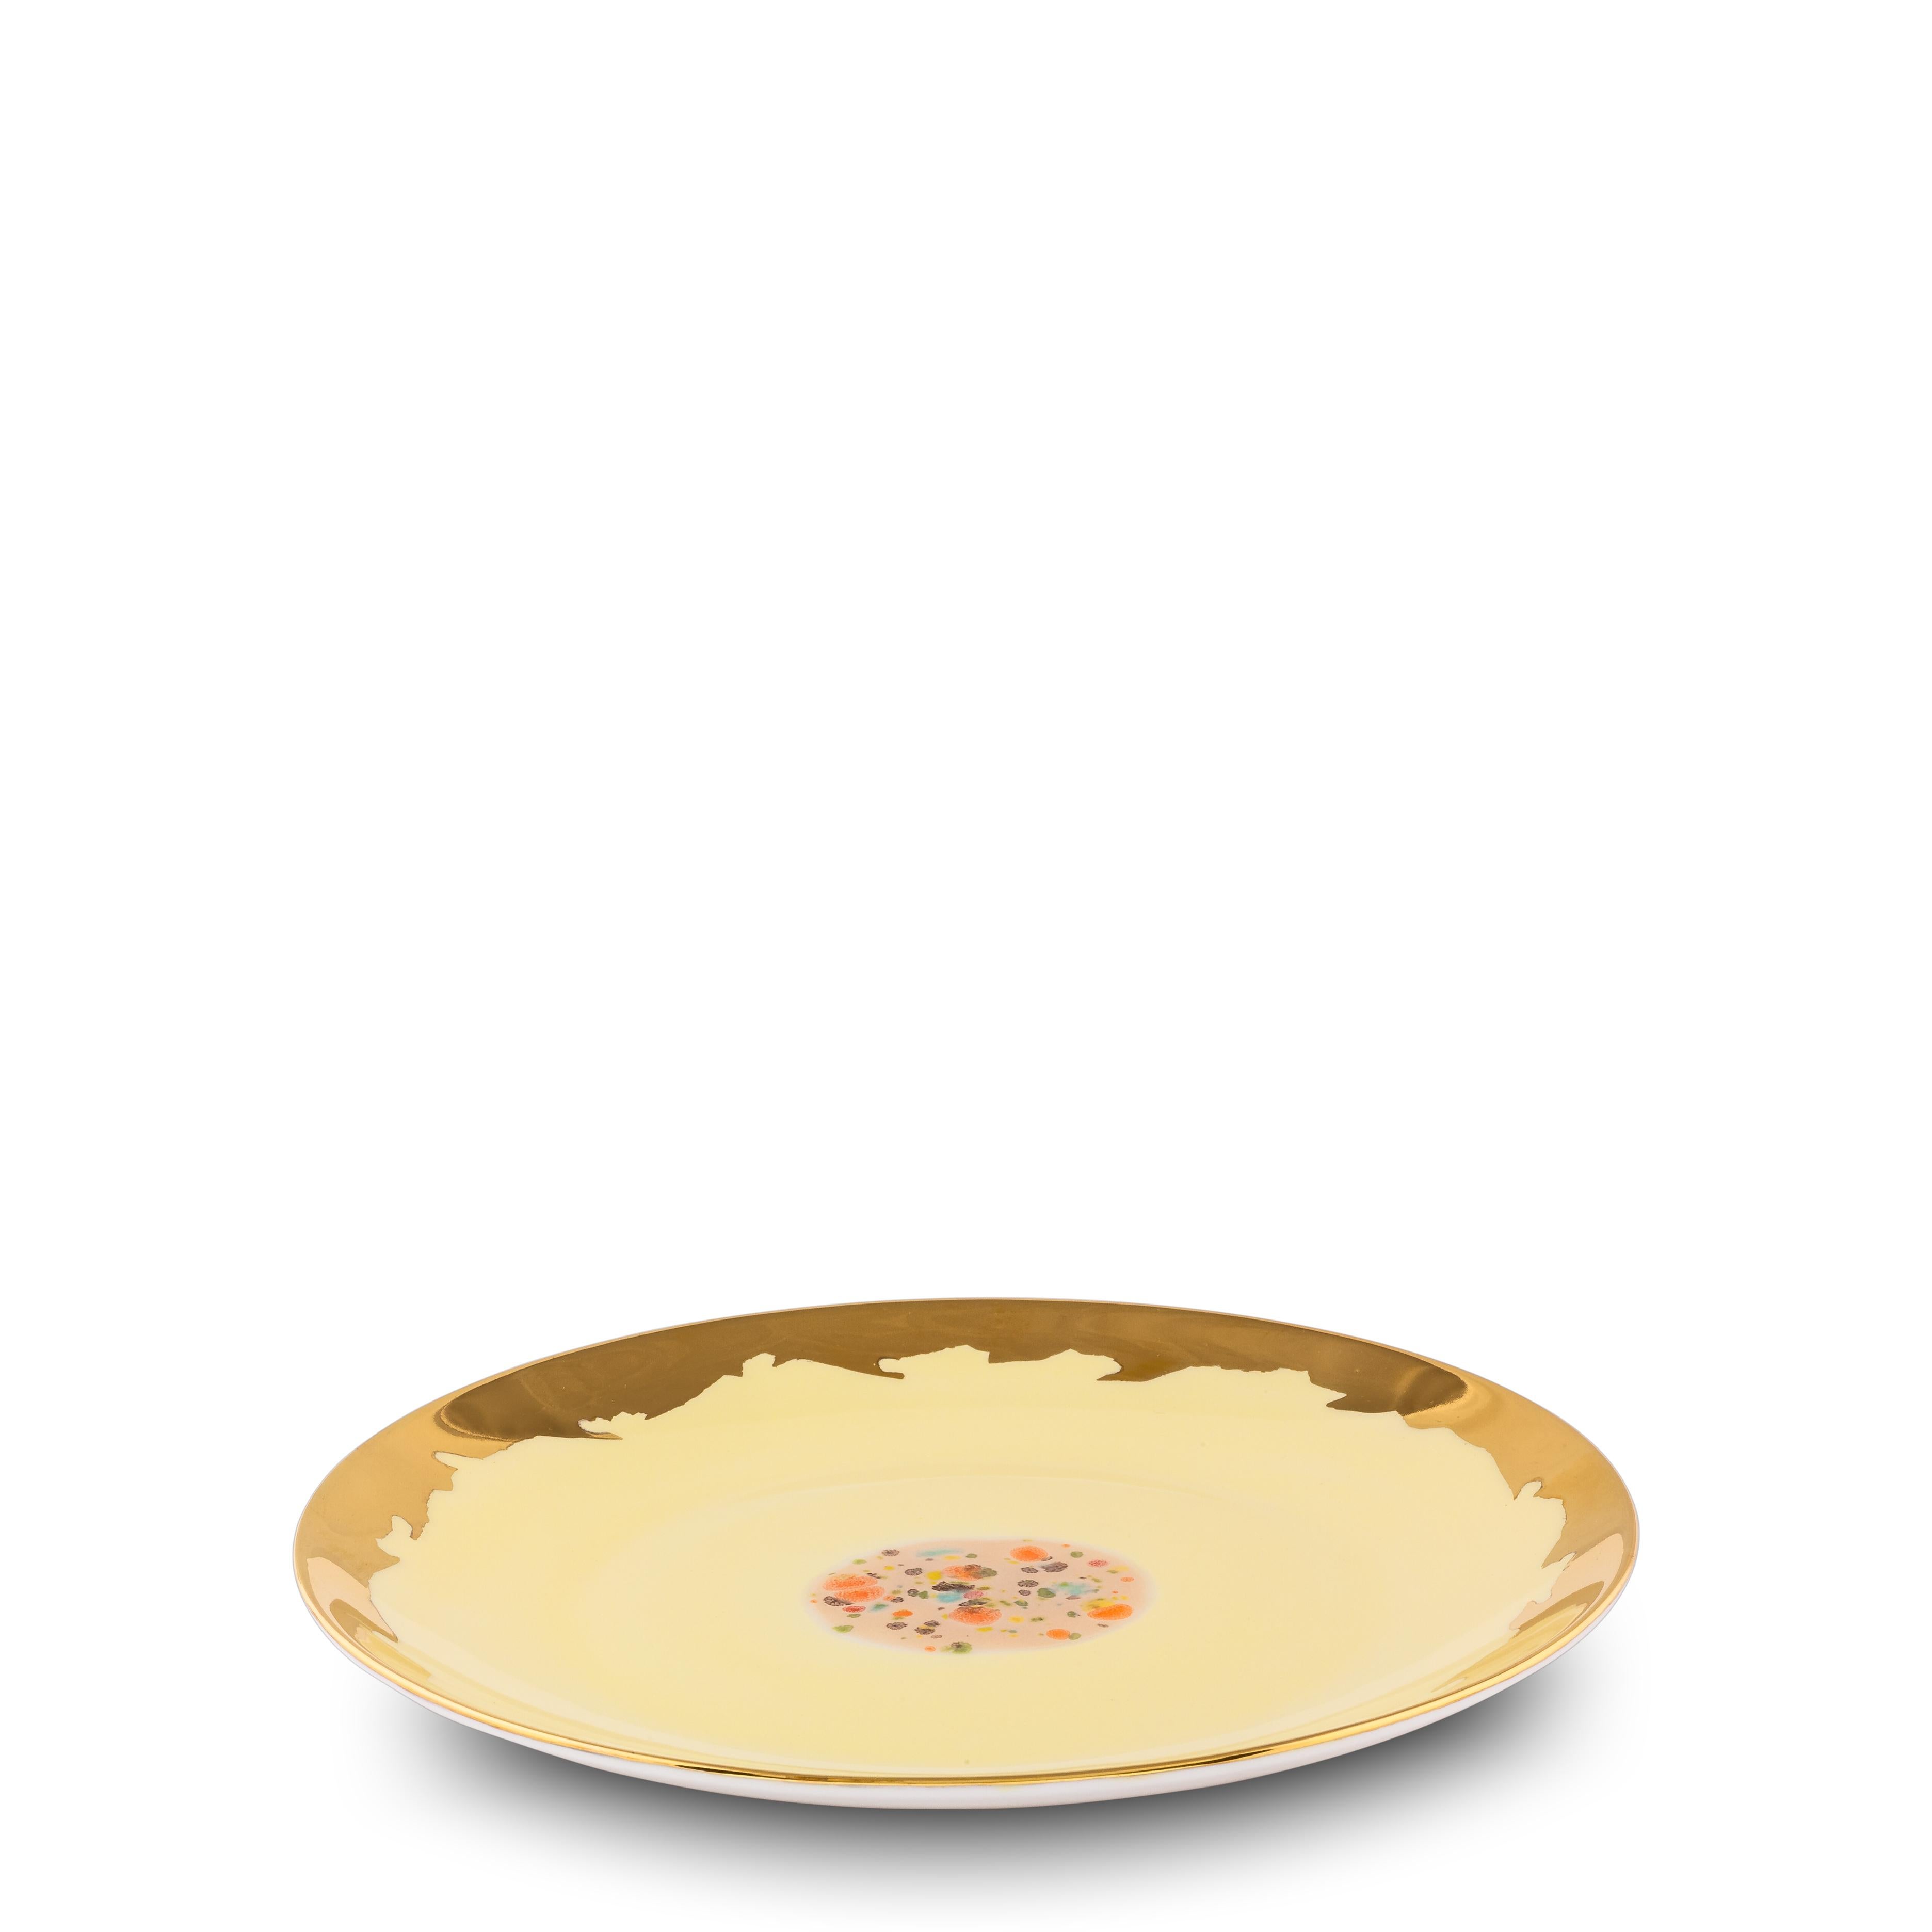 Diese in Italien aus feinstem Porzellan handgefertigten Dessertteller aus der Collection'S Chestnut haben einen originellen goldenen Tropfenrand, der die leuchtend gelbe Glasur betont.

Satz von 2 weißen Desserttellern mit Tropfenrand, Maße: Ø 22